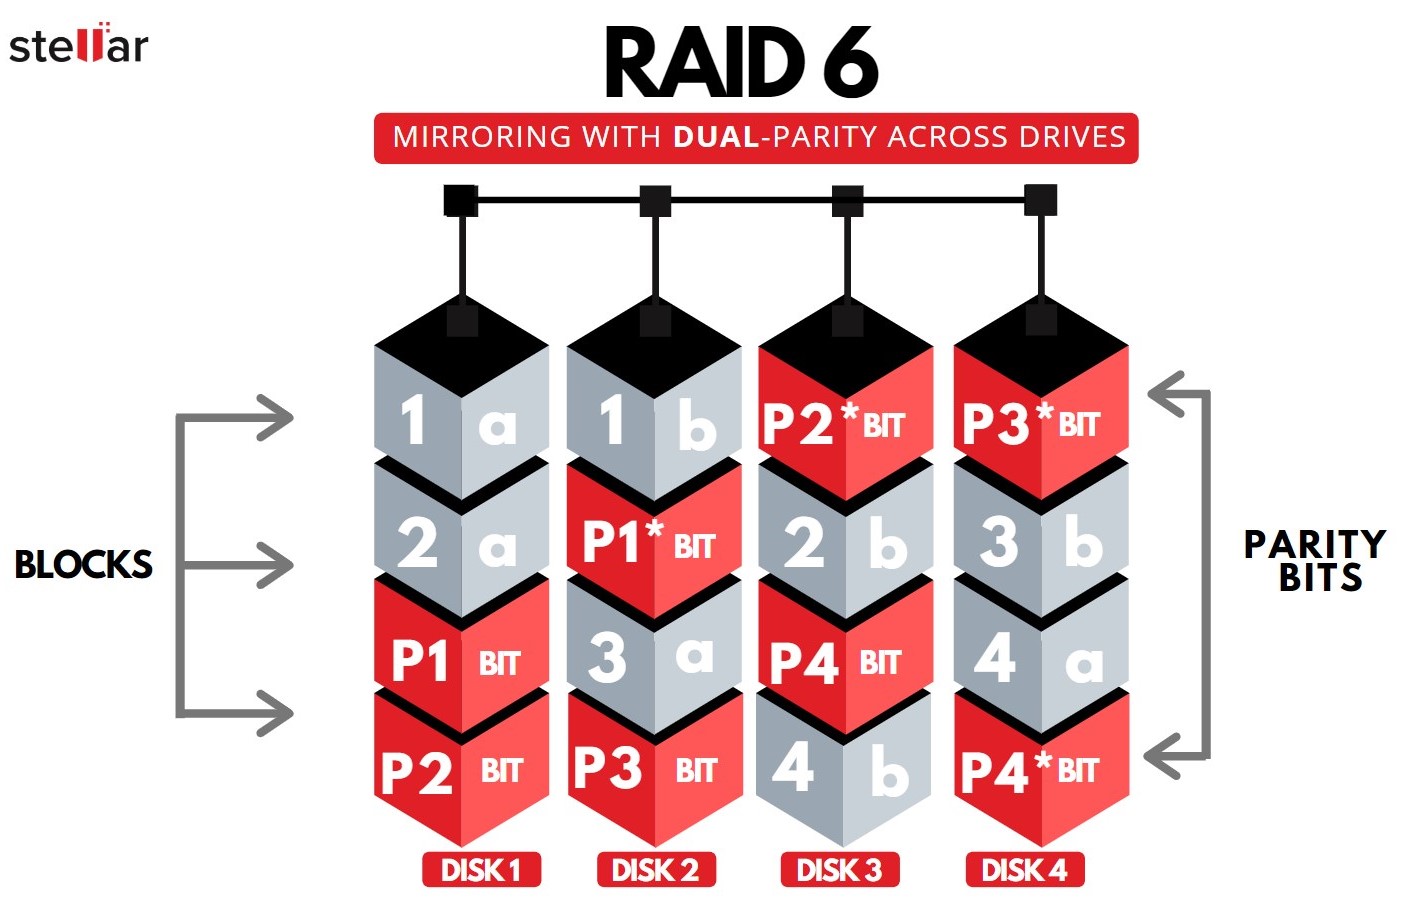 raid-6